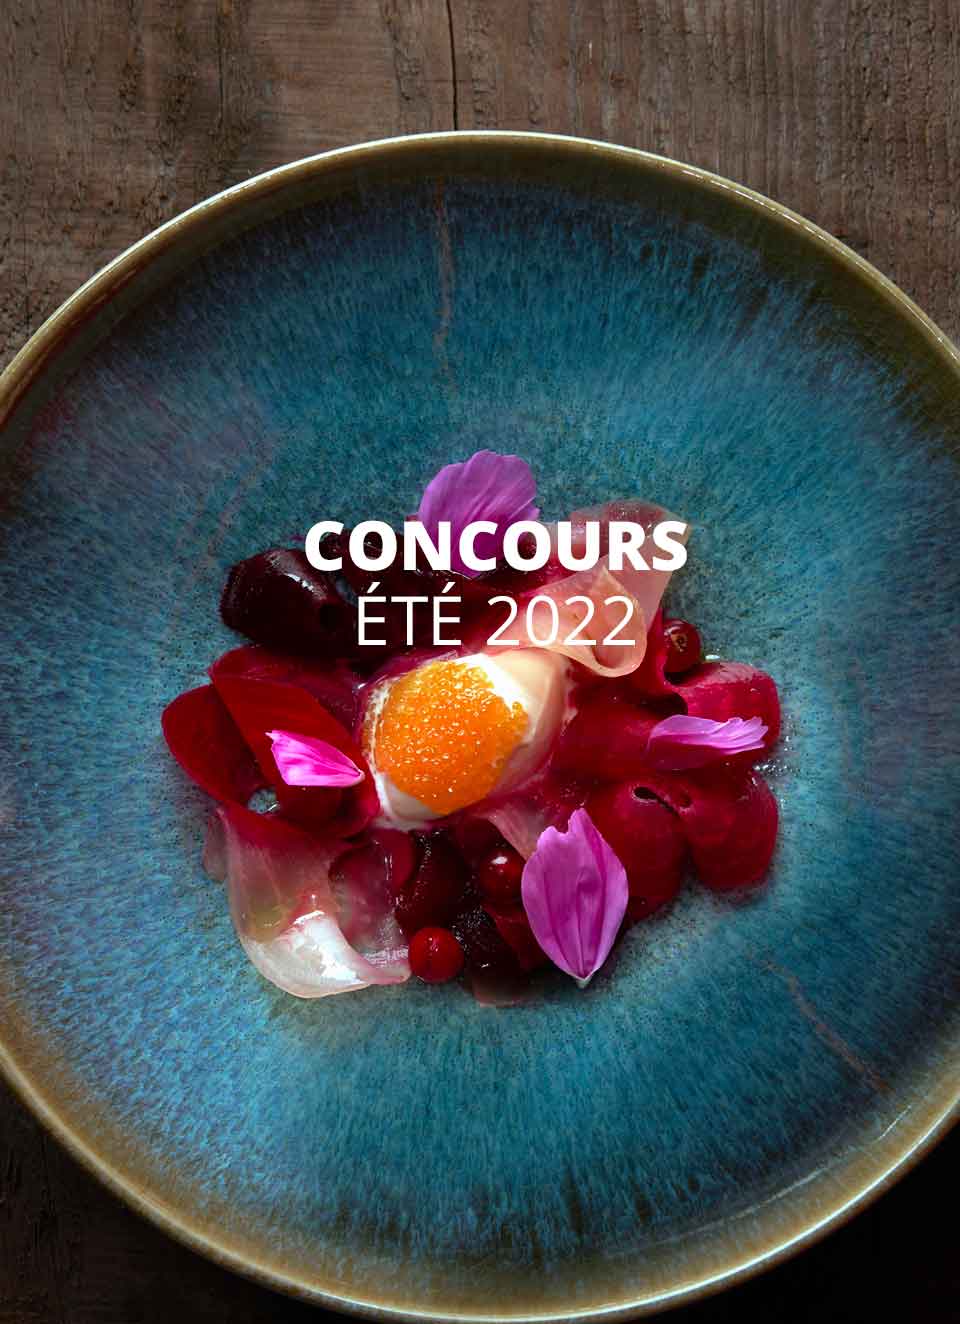 concours été 2022 magazine exquis table du gourmet Riquewihr